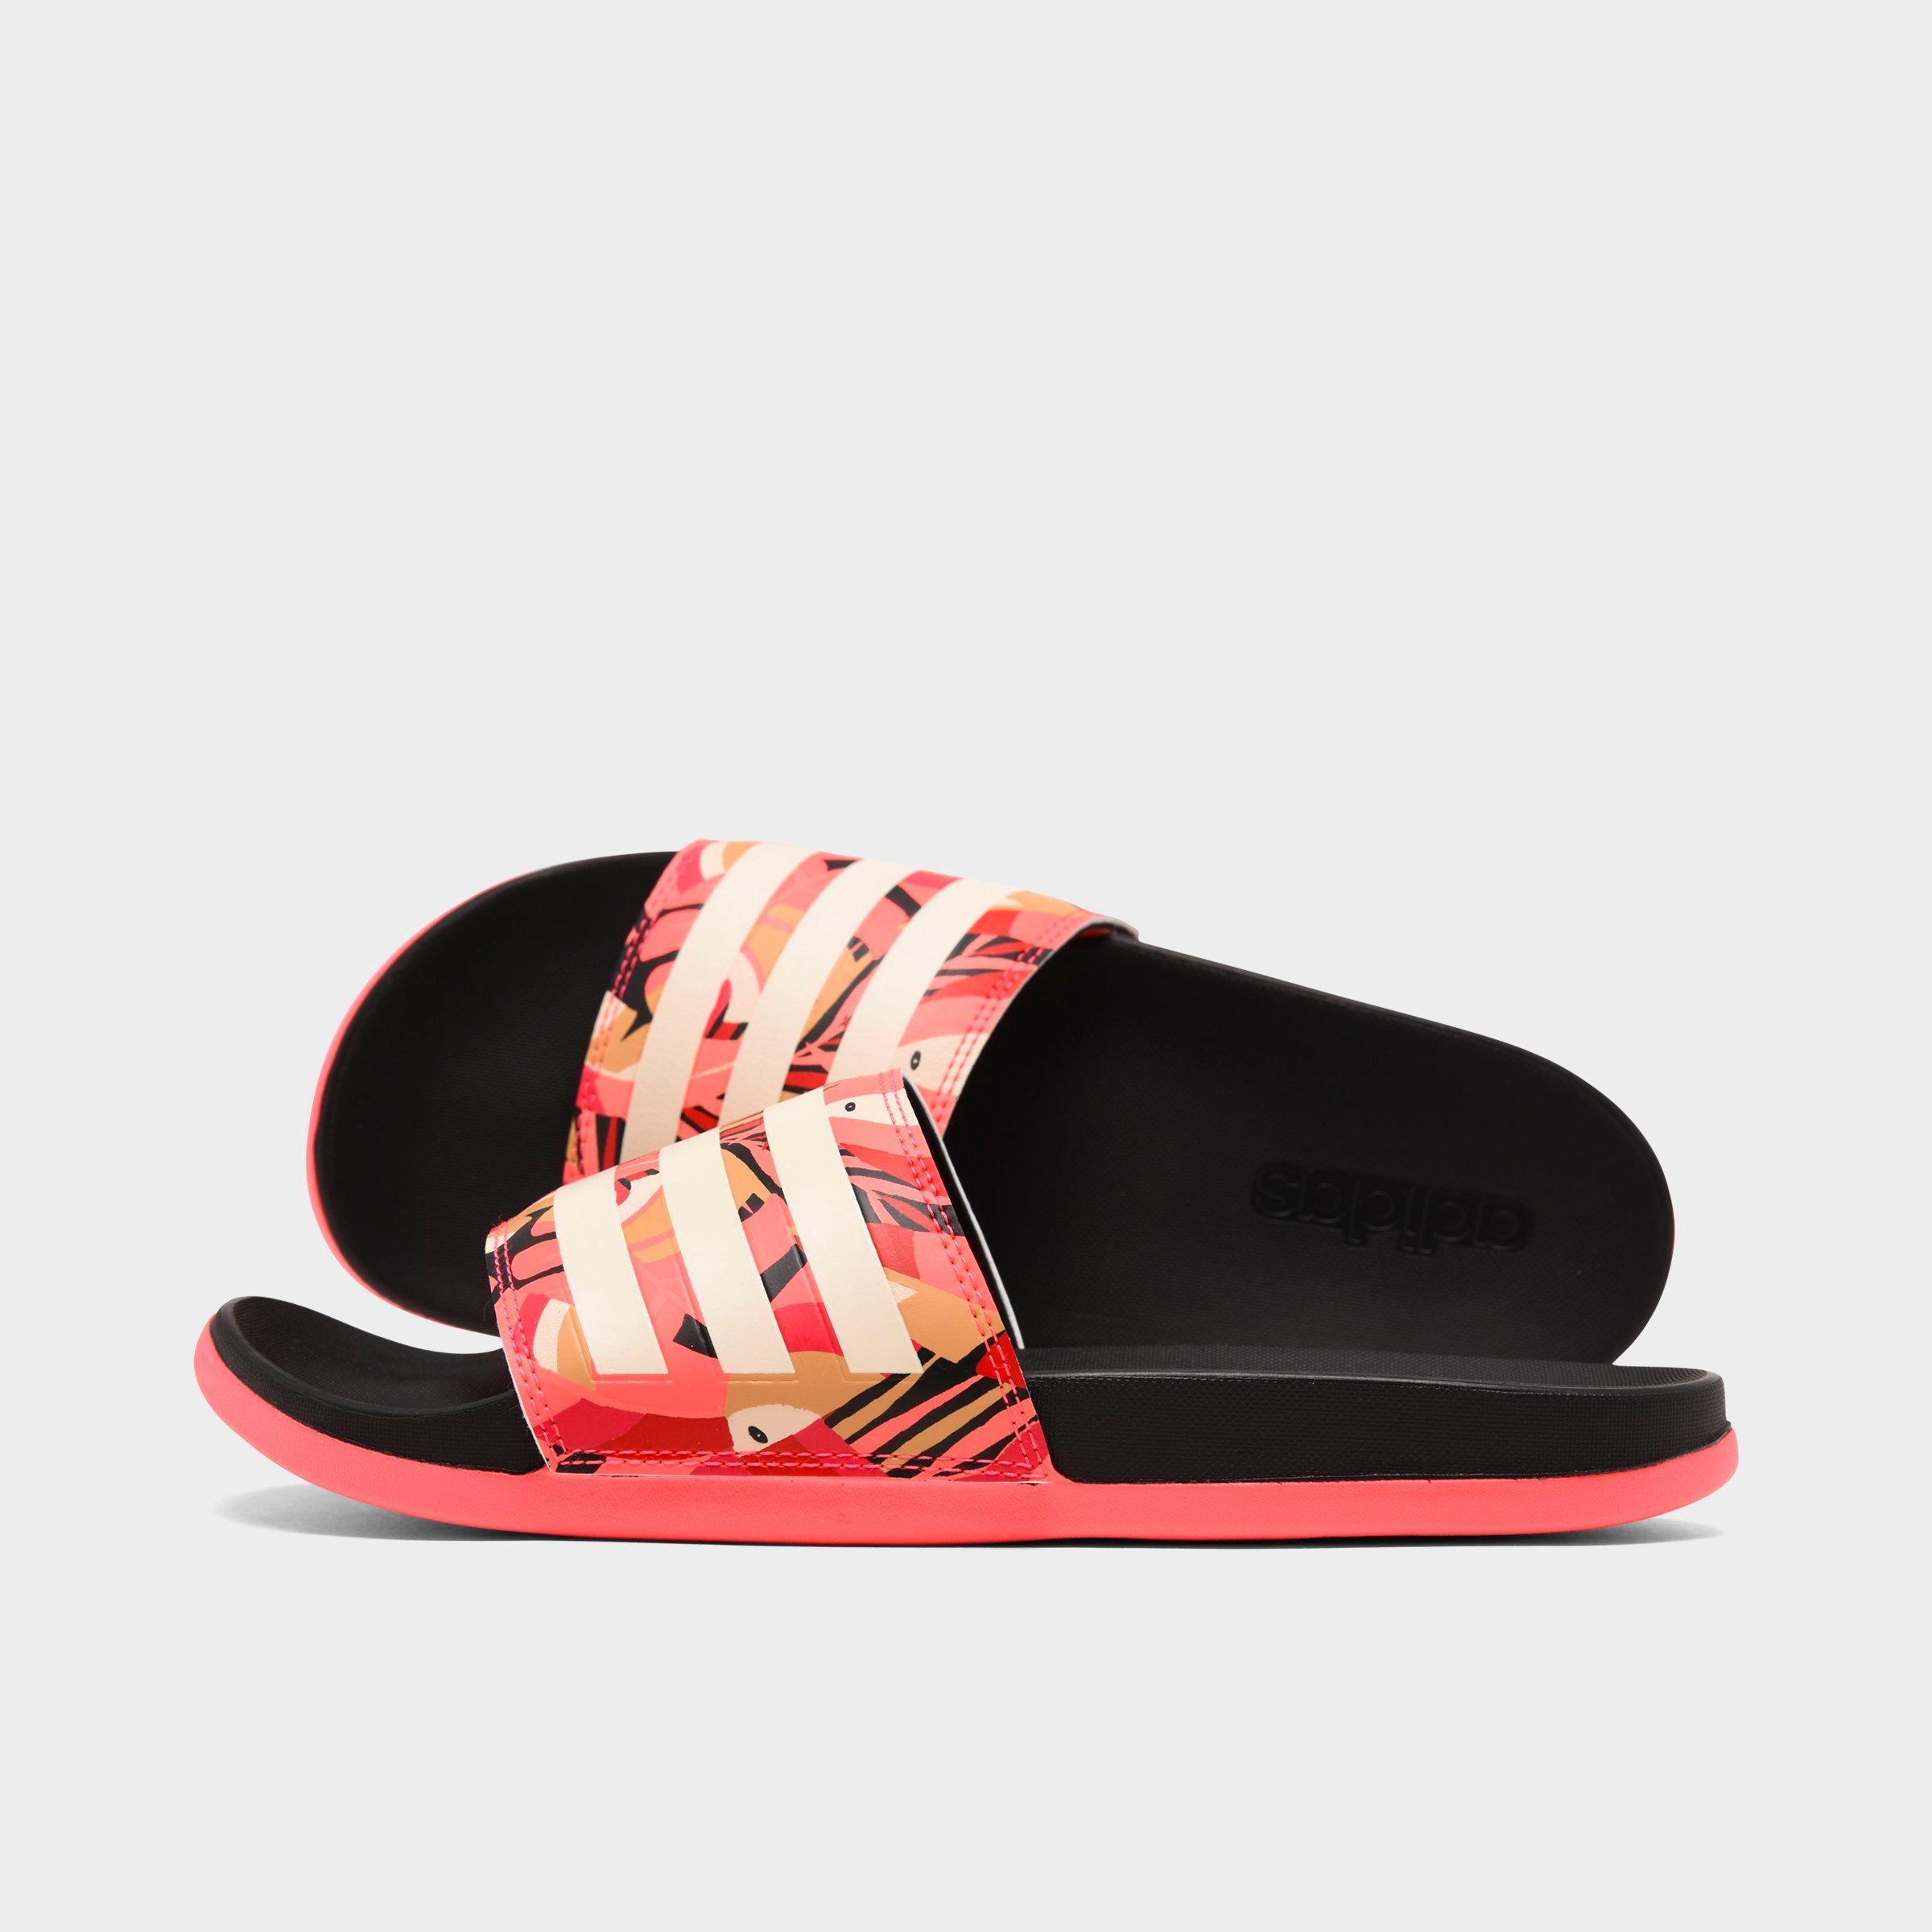 adidas women's adilette comfort slide sandal